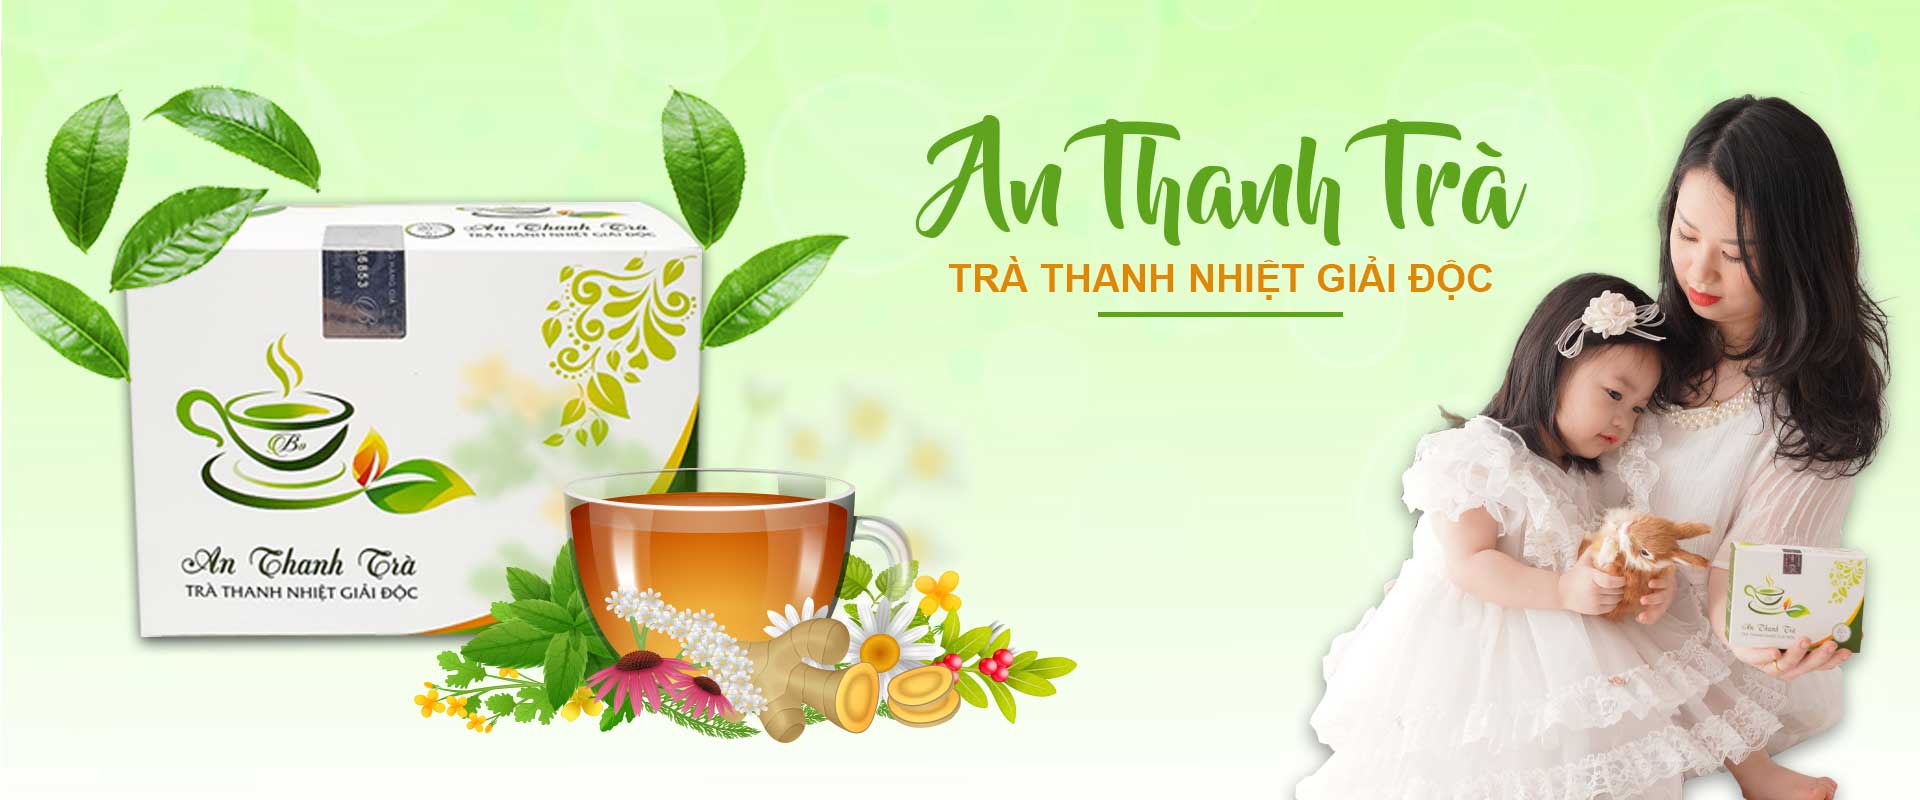 An Thanh Trà